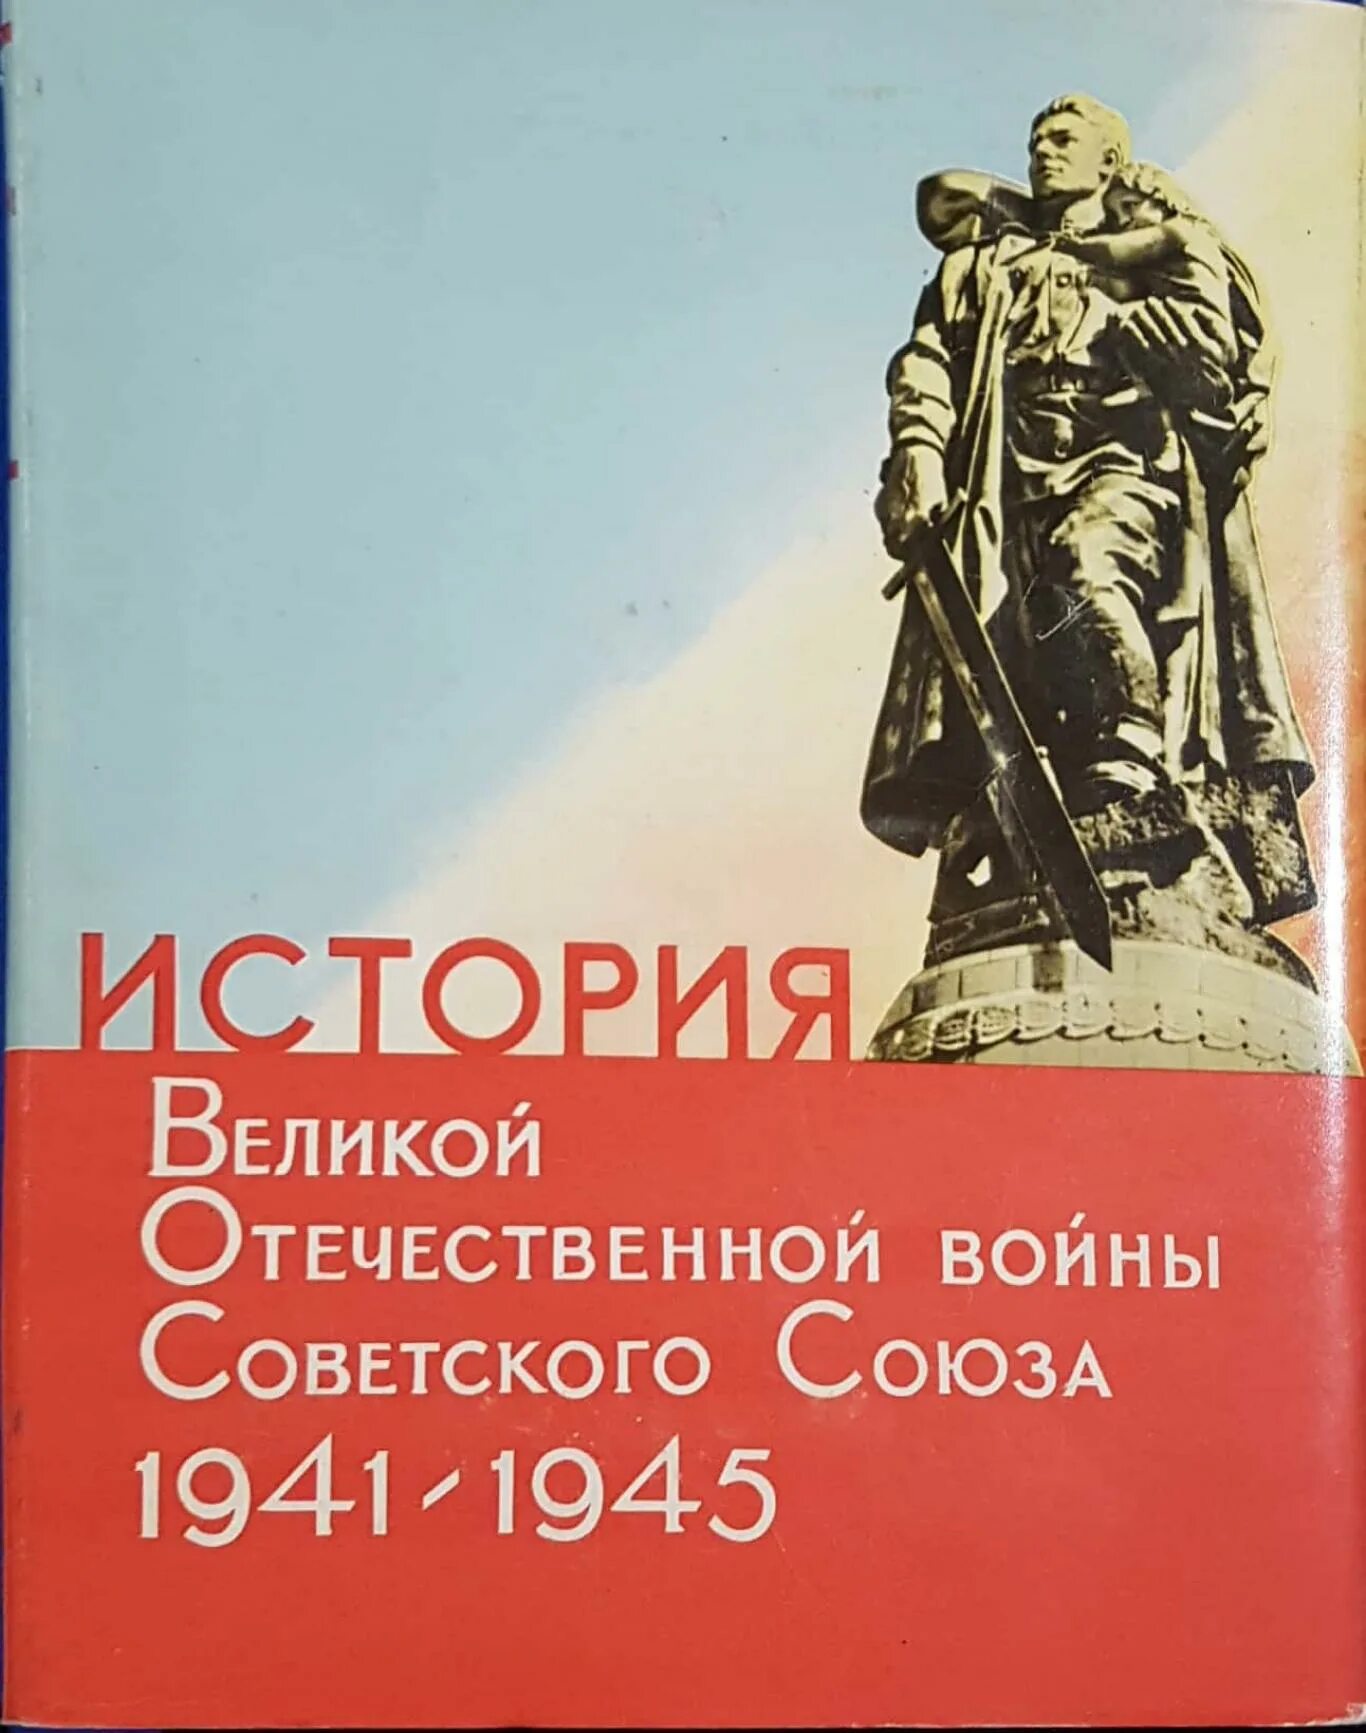 Сохраняя историю великой отечественной. Книга история Великой Отечественной войны 1941-1945.